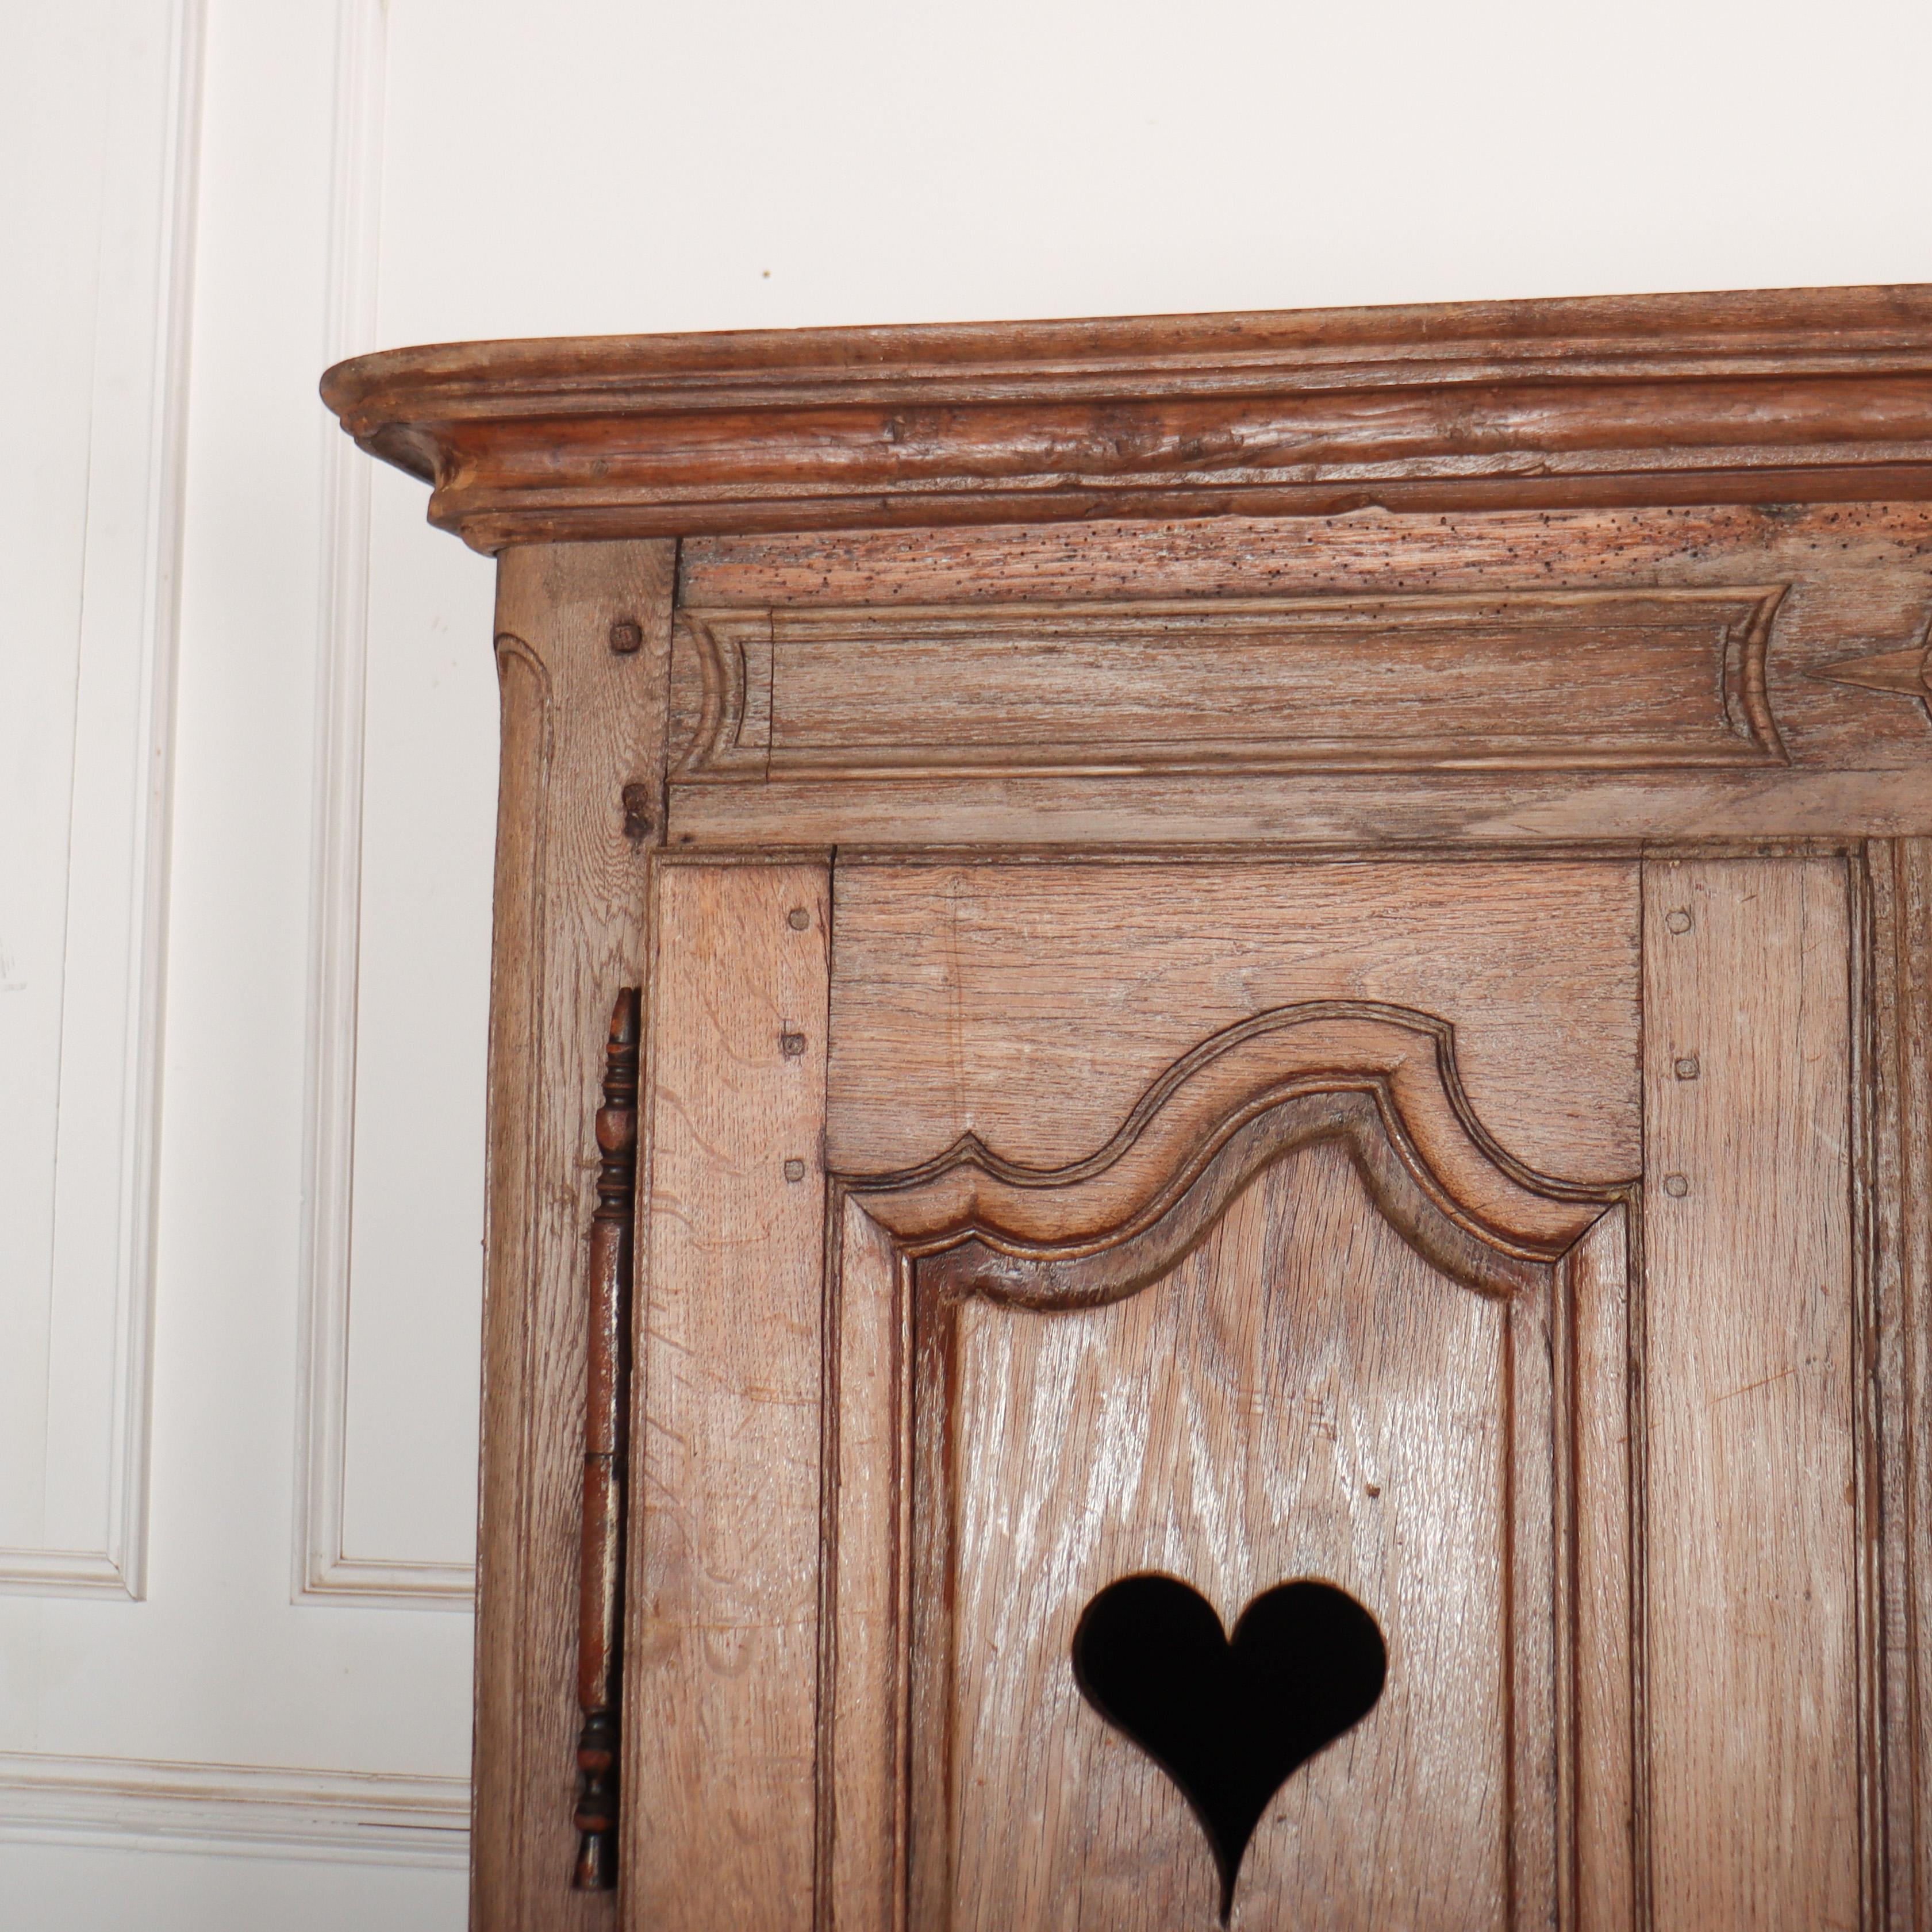 Merveilleuse petite armoire / armoire à linge en chêne blanchi français du 19ème siècle avec des cœurs stylisés dans les panneaux de porte. 1840.

Référence : 8272

Dimensions
51,5 pouces (131 cm) de large
18,5 pouces (47 cm) de profondeur
74.5